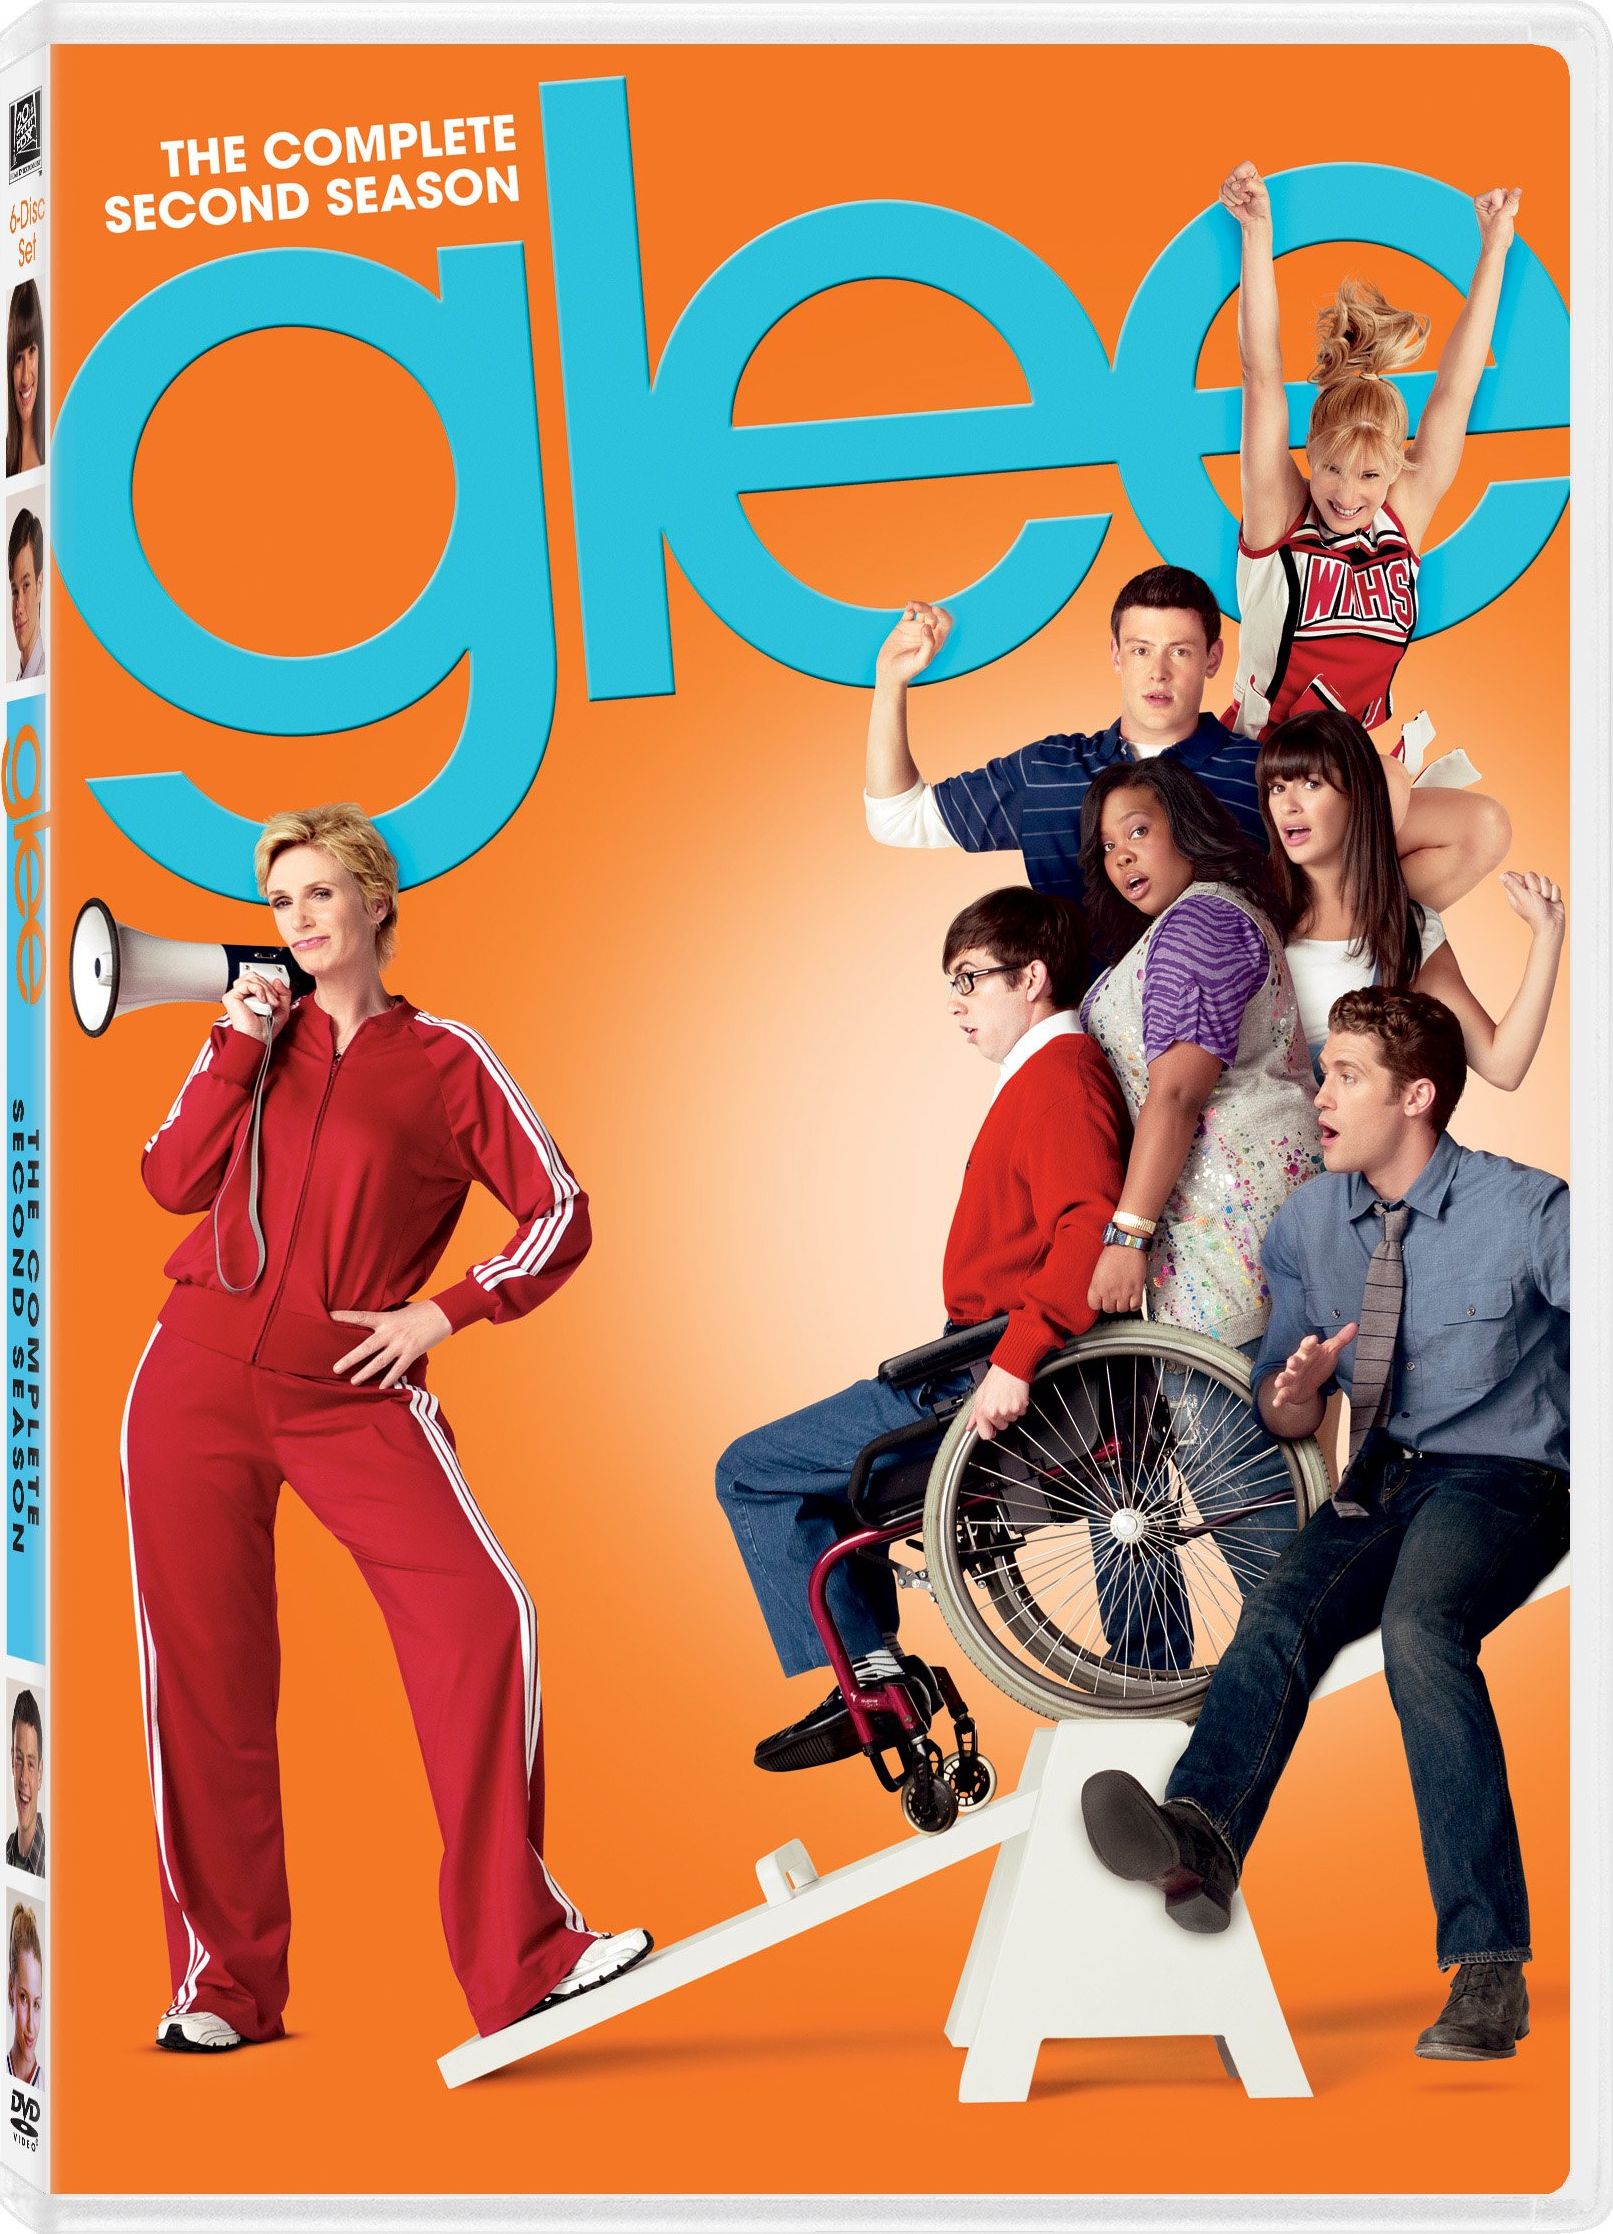 Glee season 5 dvd release date